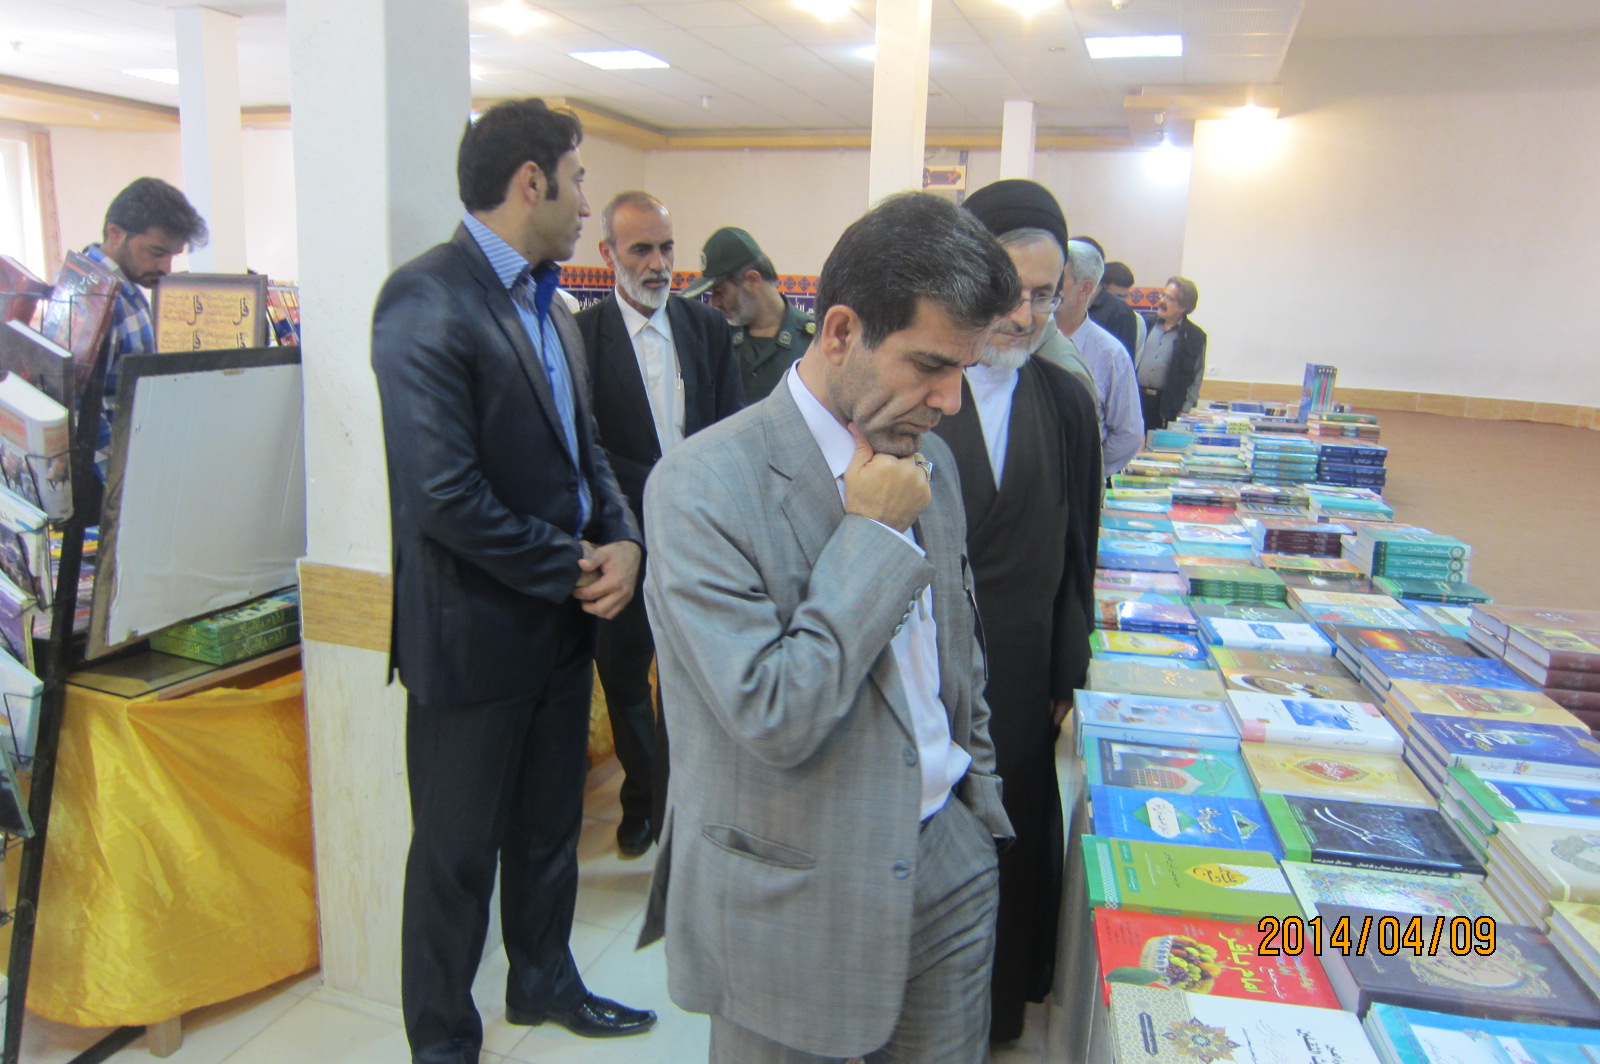 با حضور مدیر کل فرهنگ و ارشاد خوزستان نمایشگاه بزرگ کتاب قرآنی در شوشتر برگزار گردید